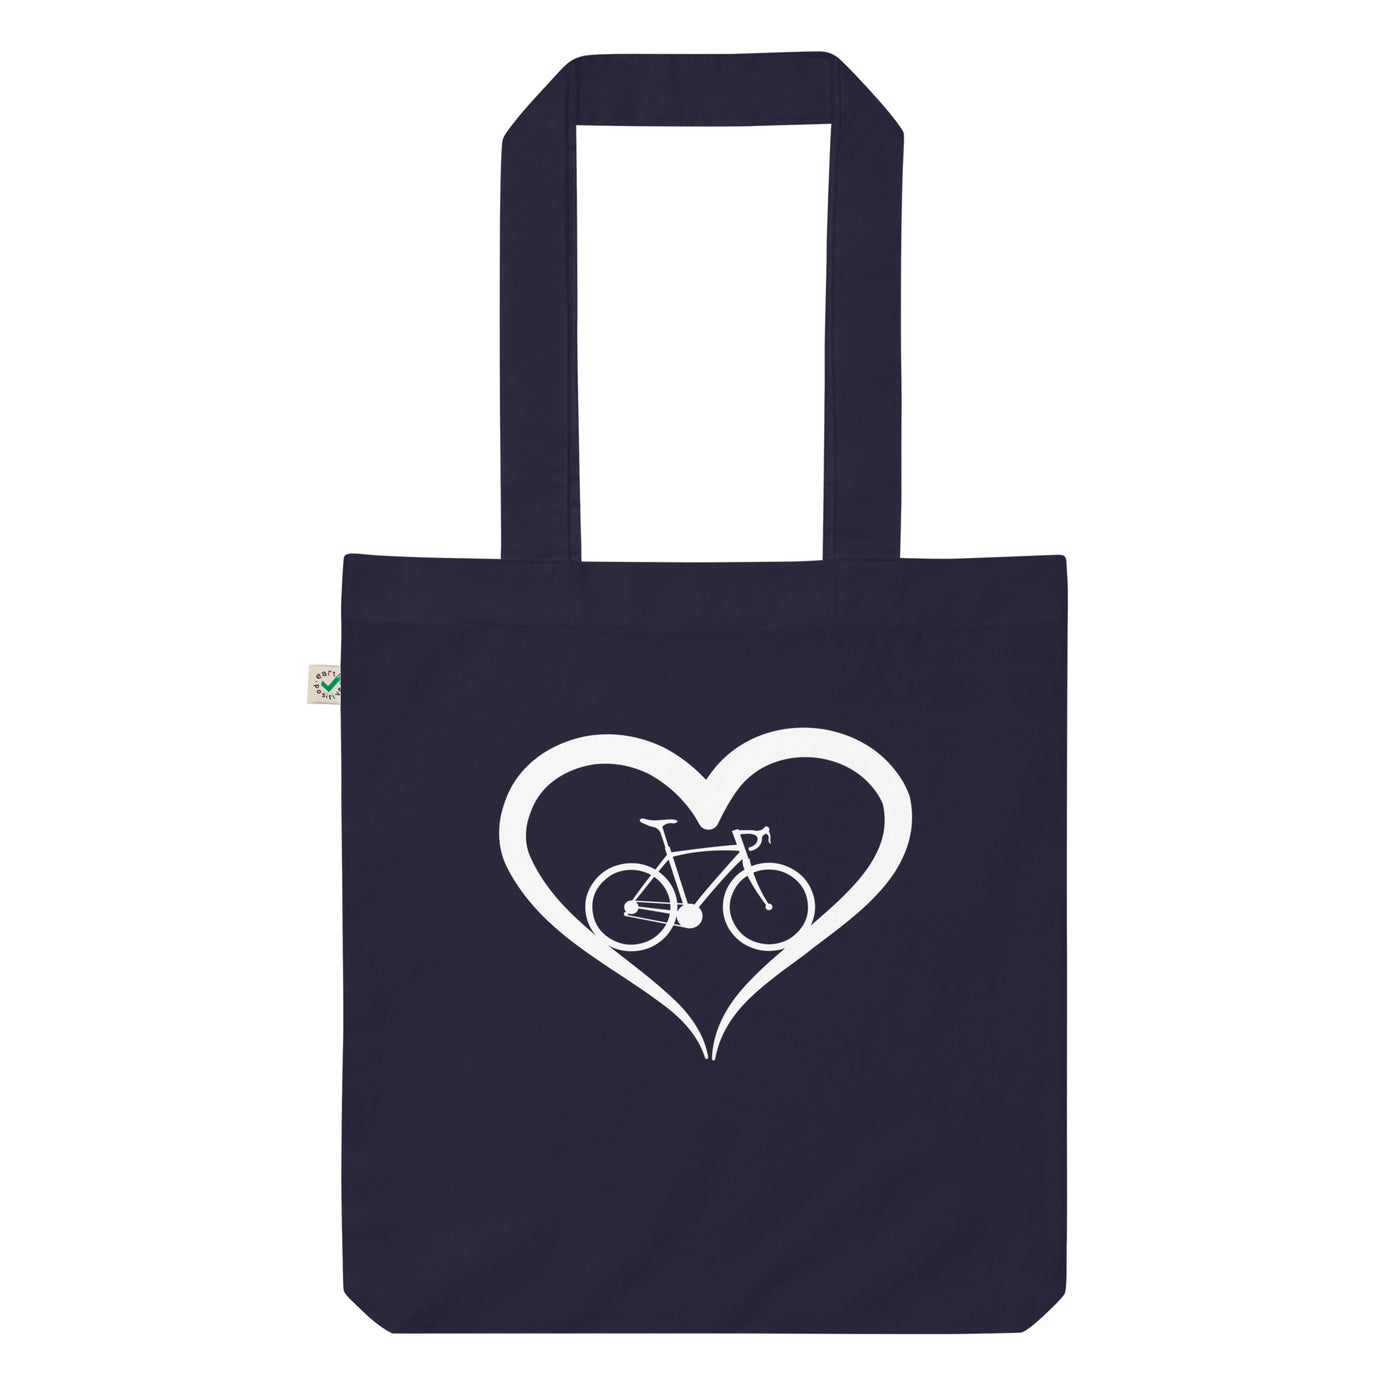 Fahrrad Und Herz - Organic Einkaufstasche fahrrad Navy